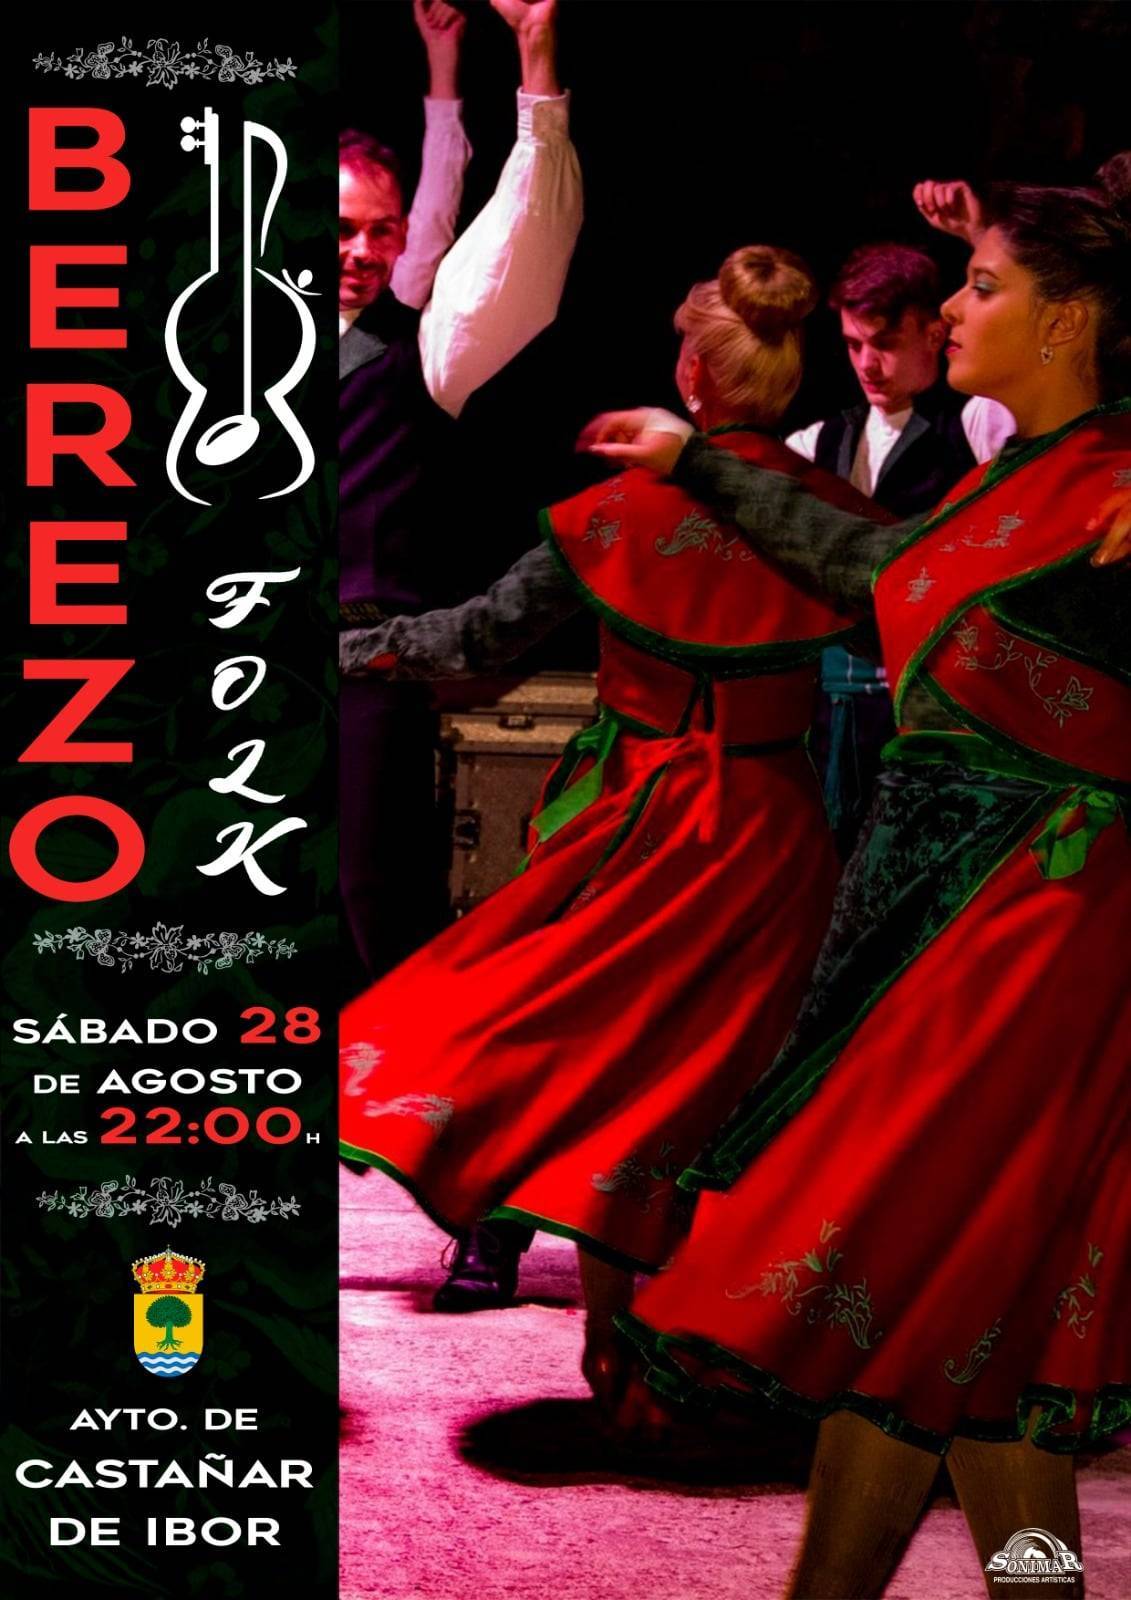 Berezo Folk (2021) - Castañar de Ibor (Cáceres)